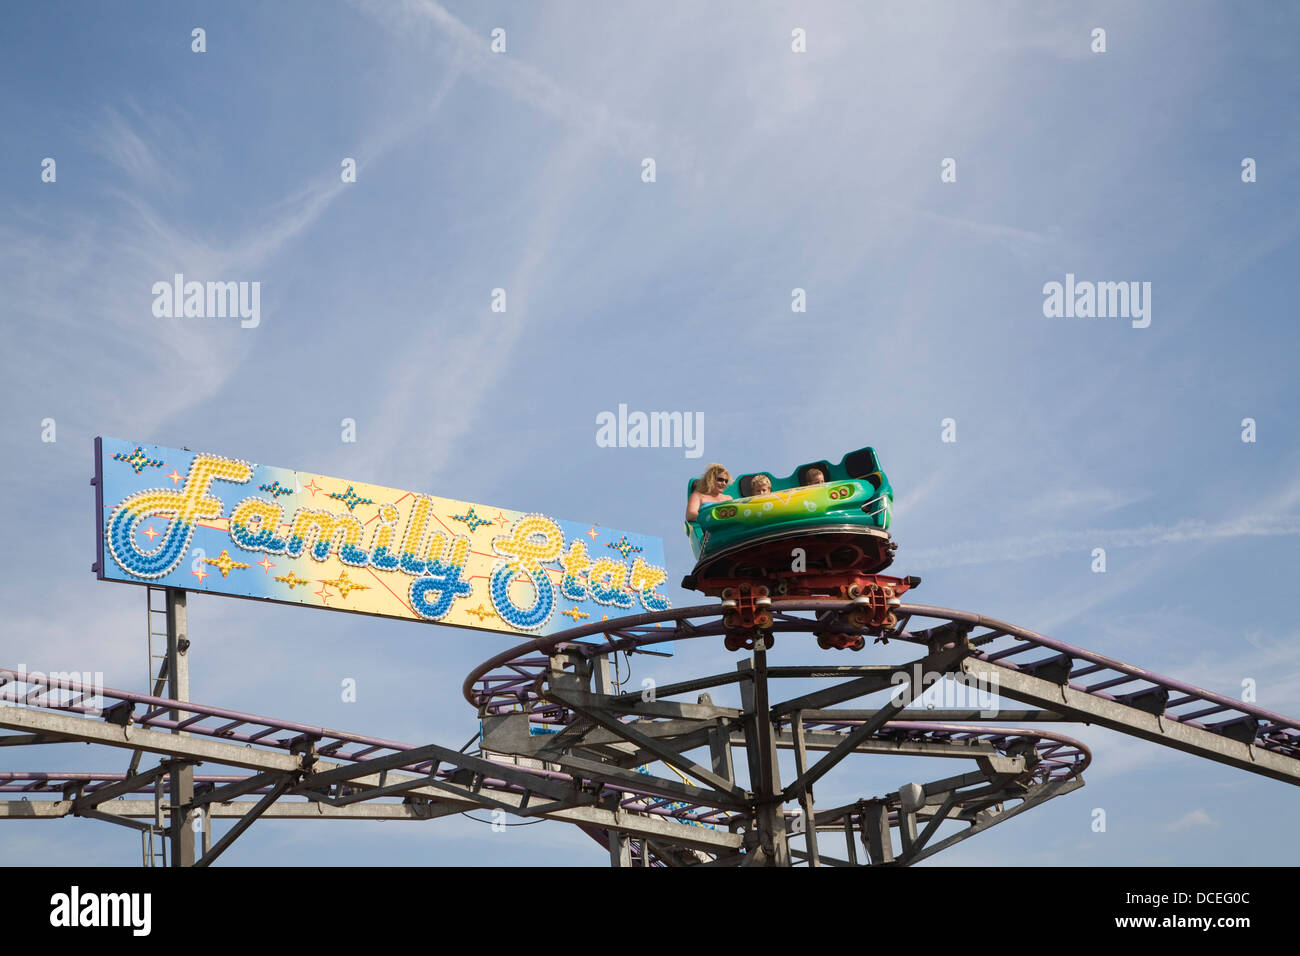 Star de la famille sky train à Pleasure Beach fête foraine Great Yarmouth, Norfolk, Angleterre Banque D'Images